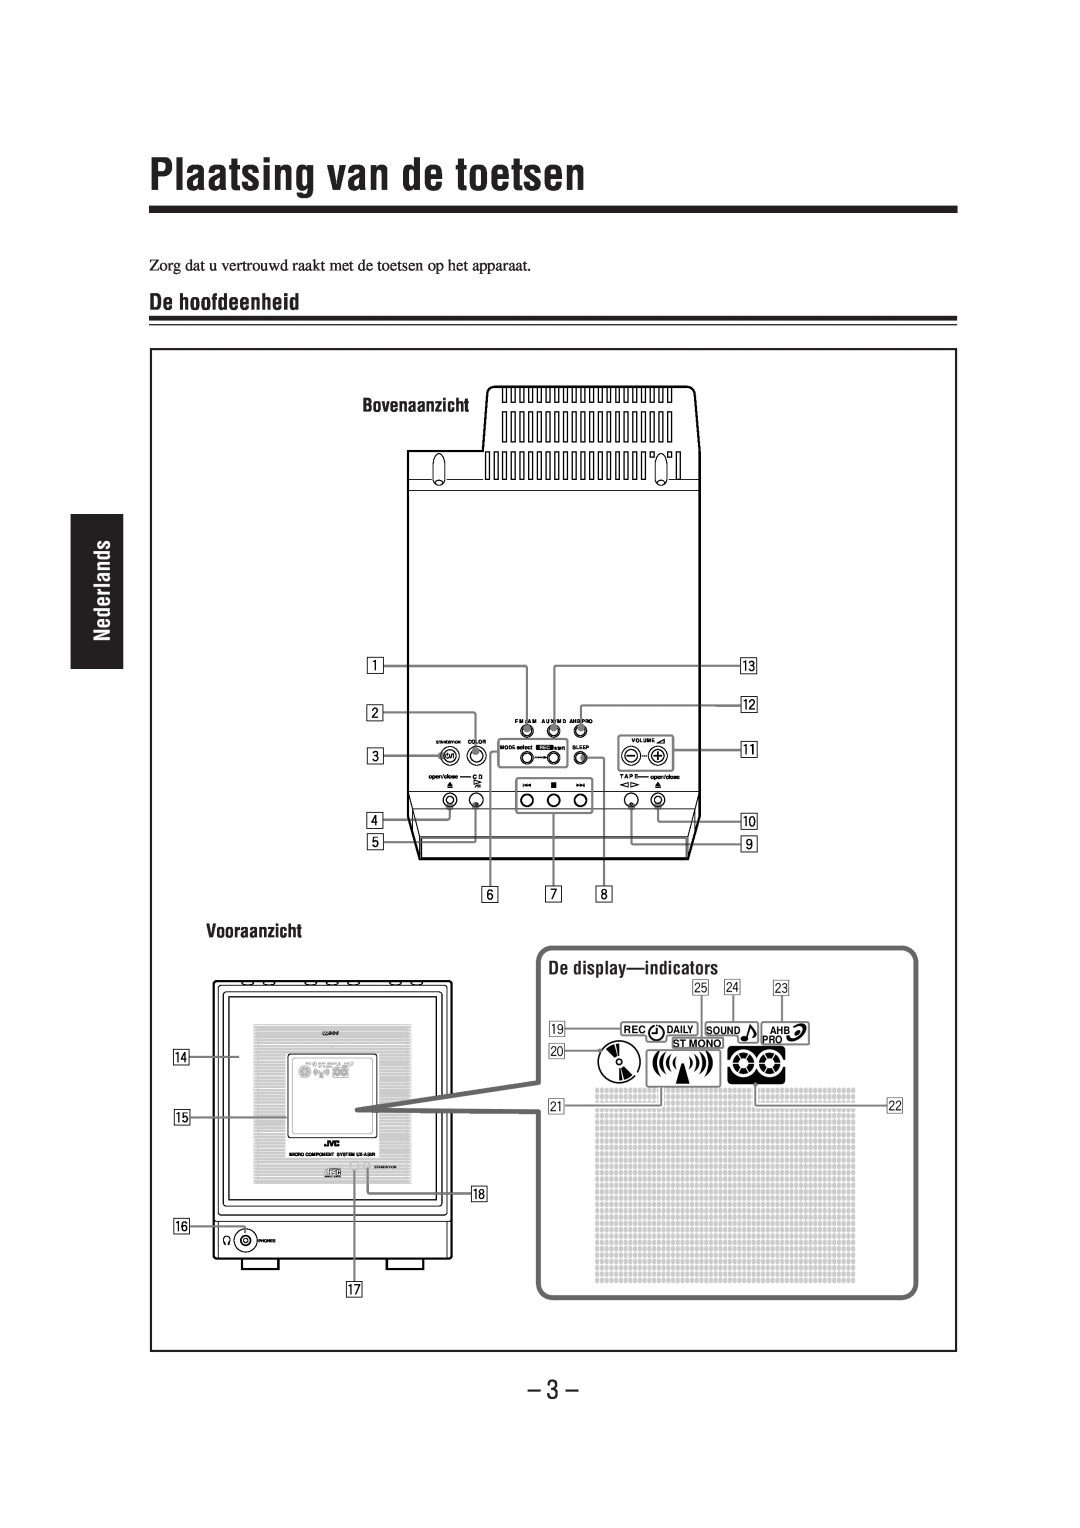 JVC UX-A52R Plaatsing van de toetsen, De hoofdeenheid, Bovenaanzicht, Vooraanzicht, De display-indicators, Nederlands 